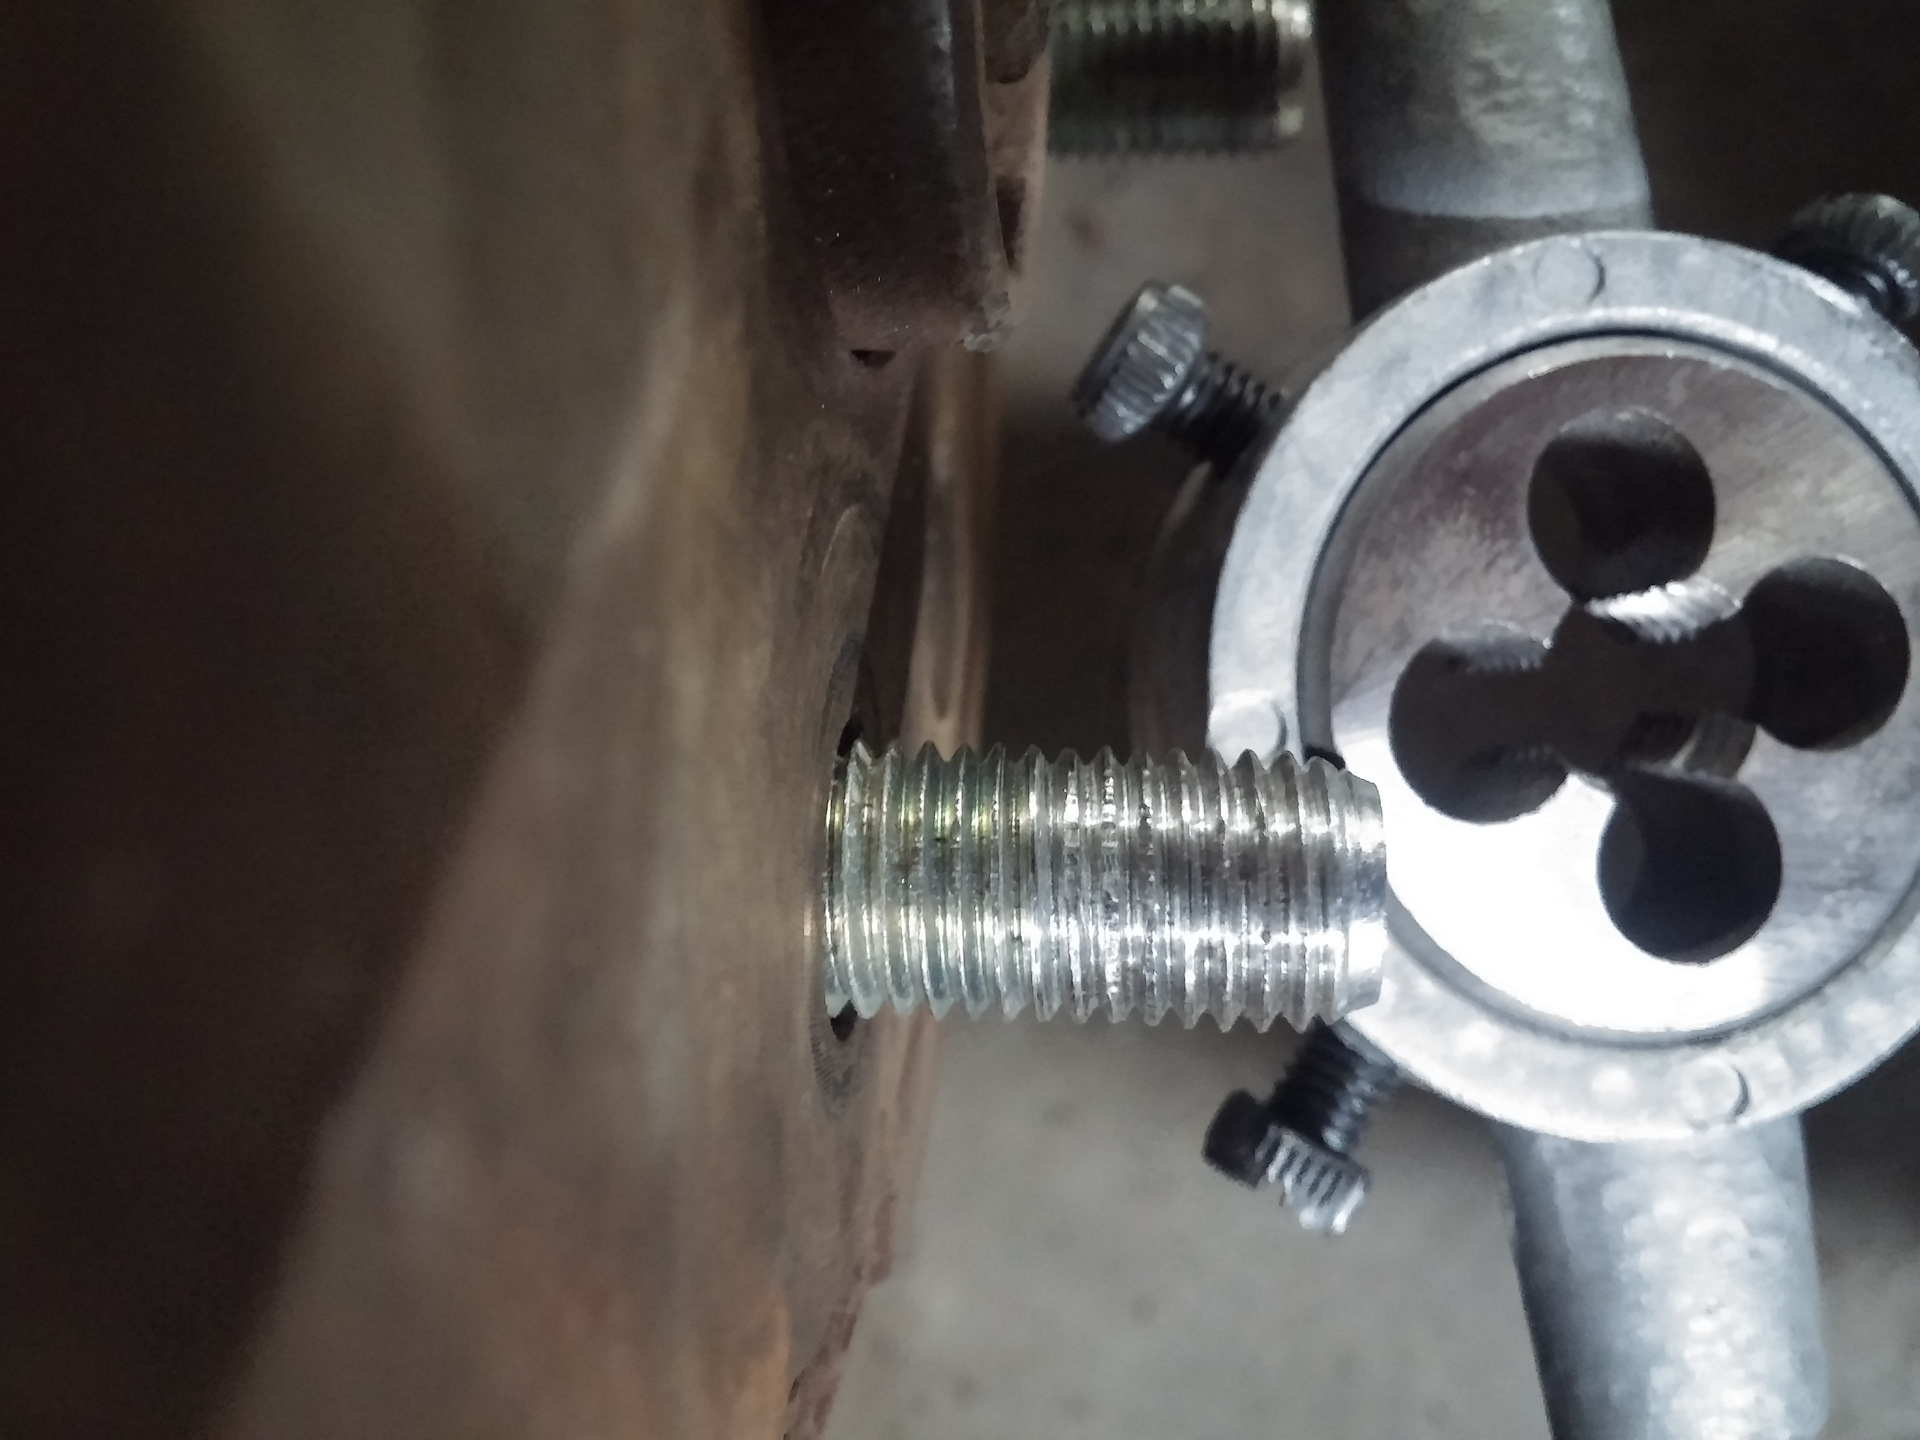 Восстановление и ремонт резьбовых соединений в конструкции скутера